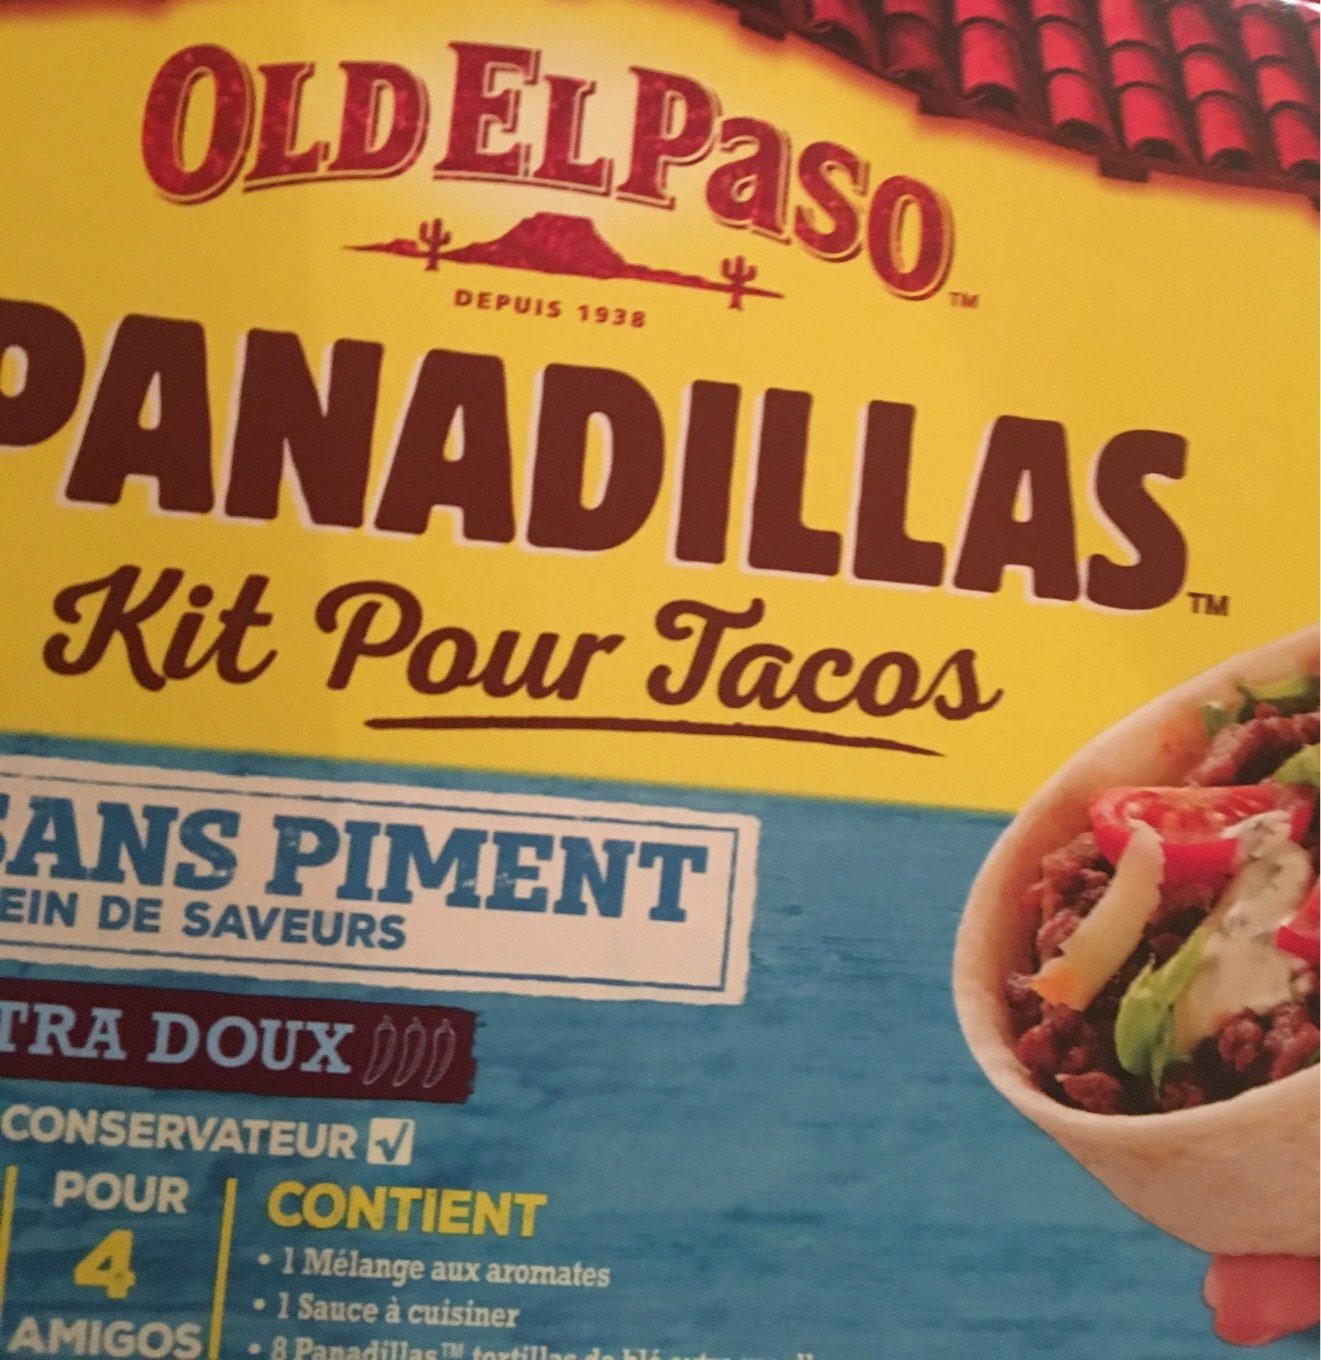 Kit tacos panadillas sans piment OLD EL PASO - Produit